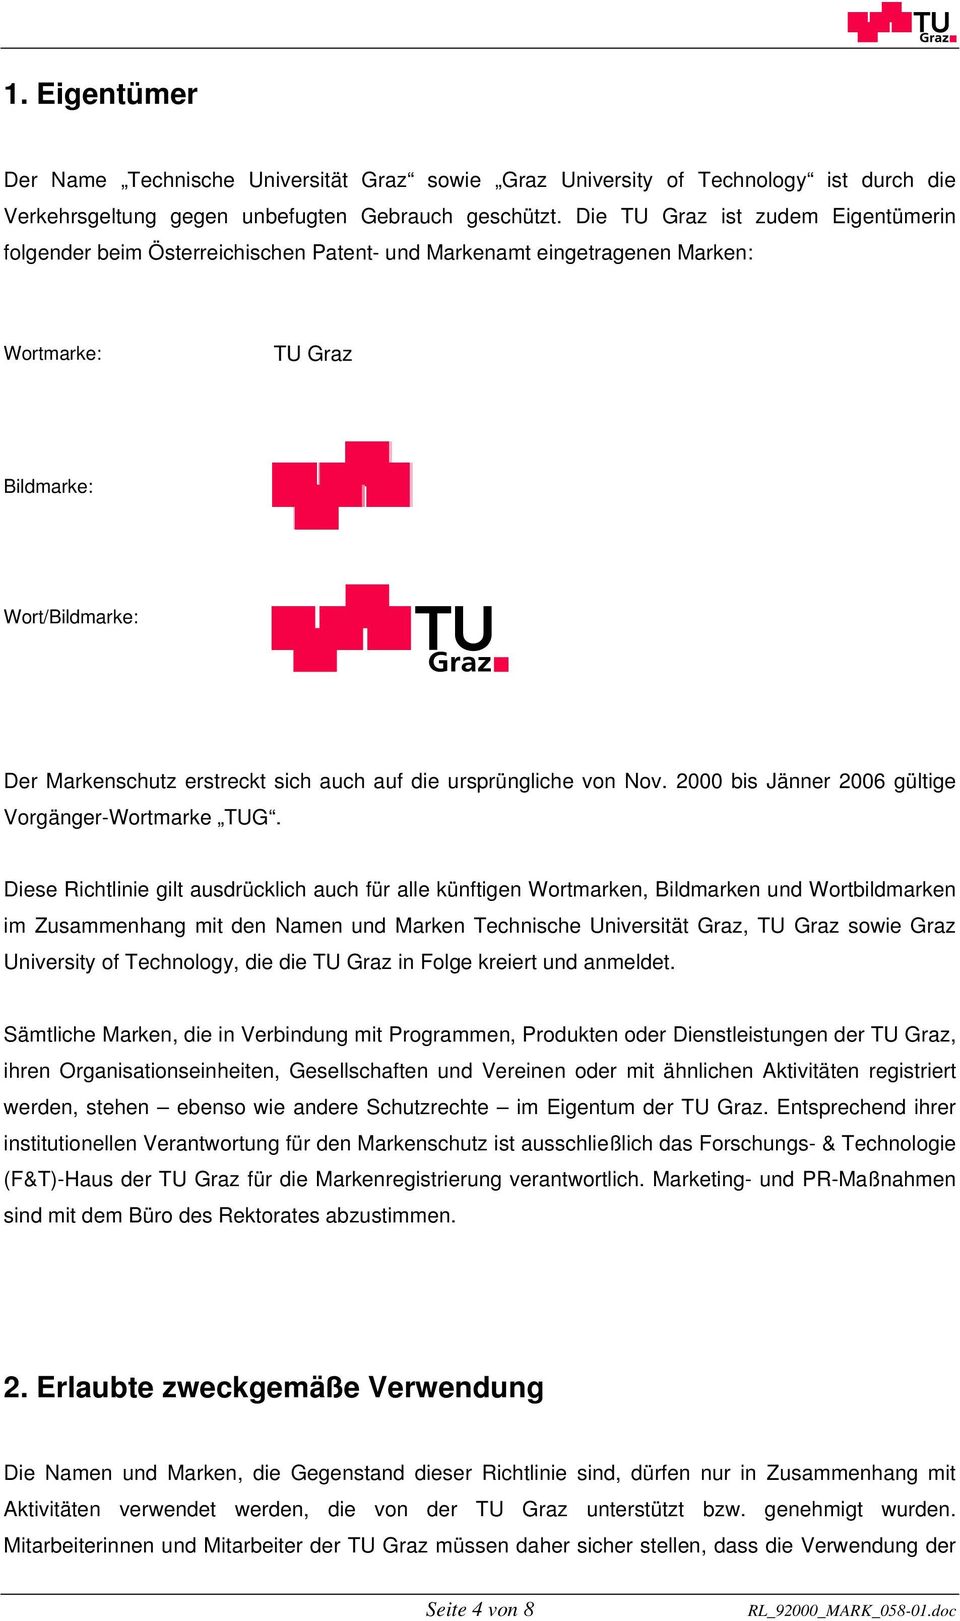 die ursprüngliche von Nov. 2000 bis Jänner 2006 gültige Vorgänger-Wortmarke TUG.